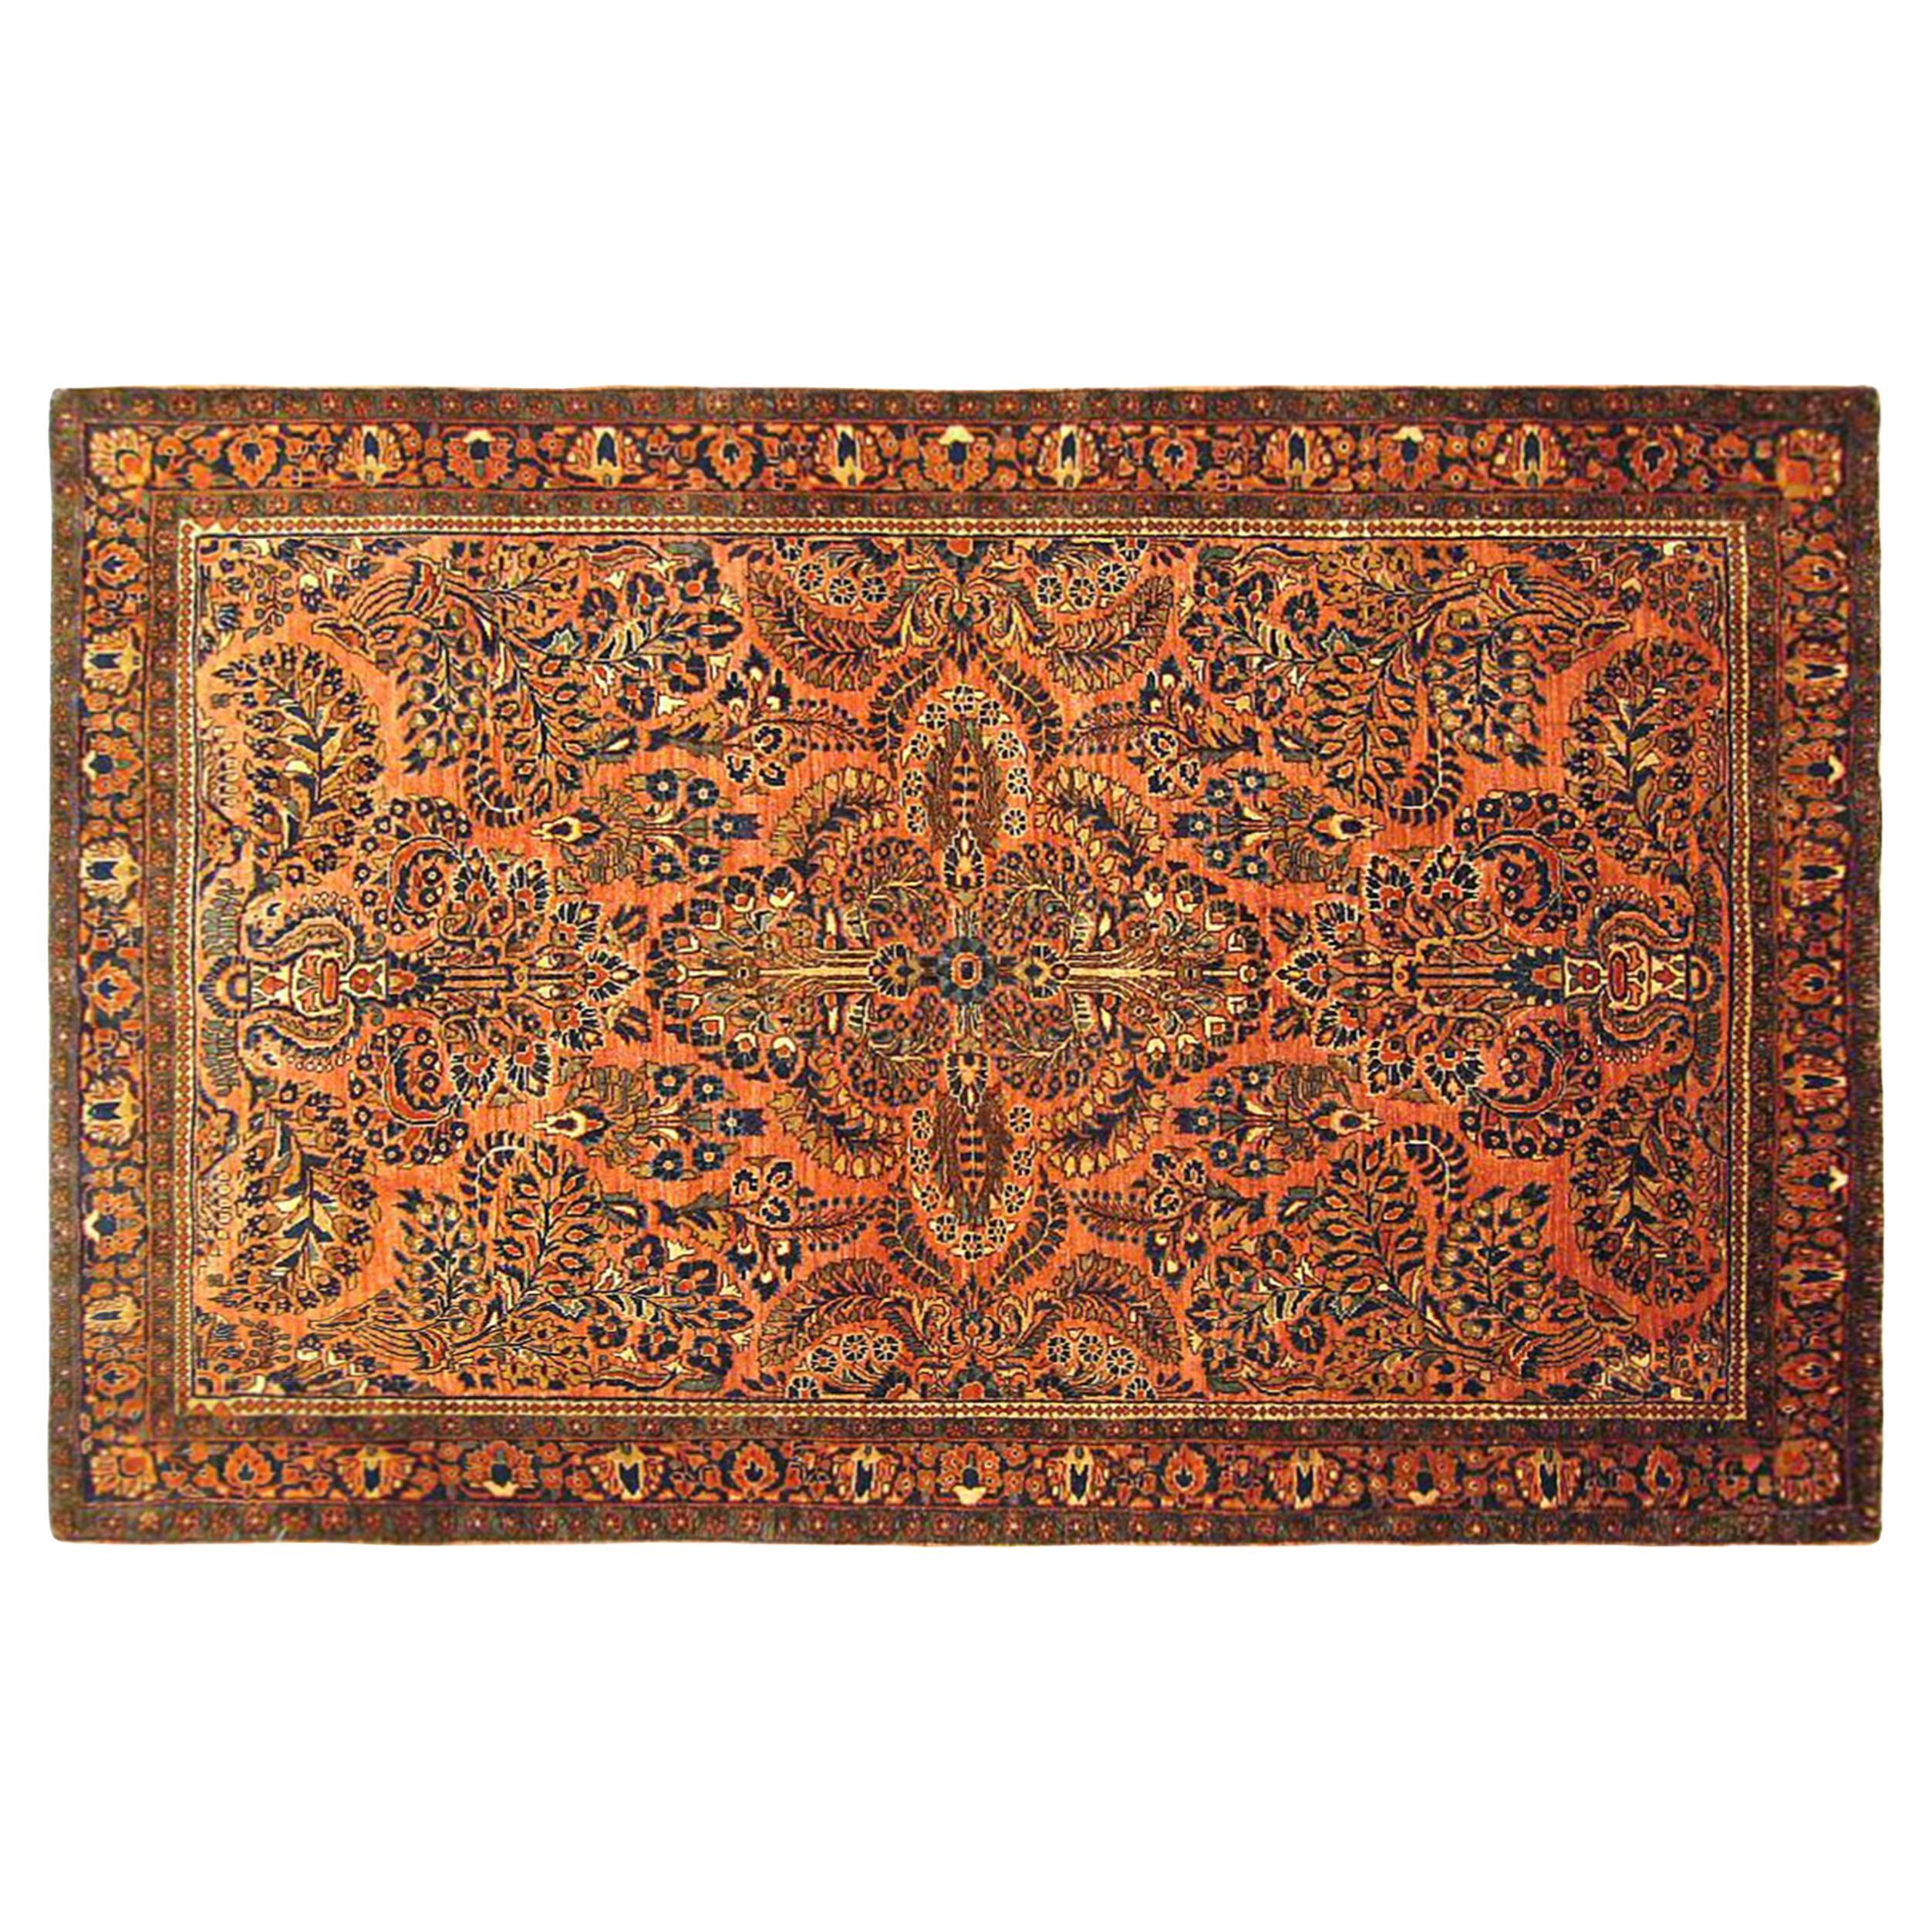 Tapis persan ancien de style Sarouk oriental, de petite taille, avec un motif floral complexe